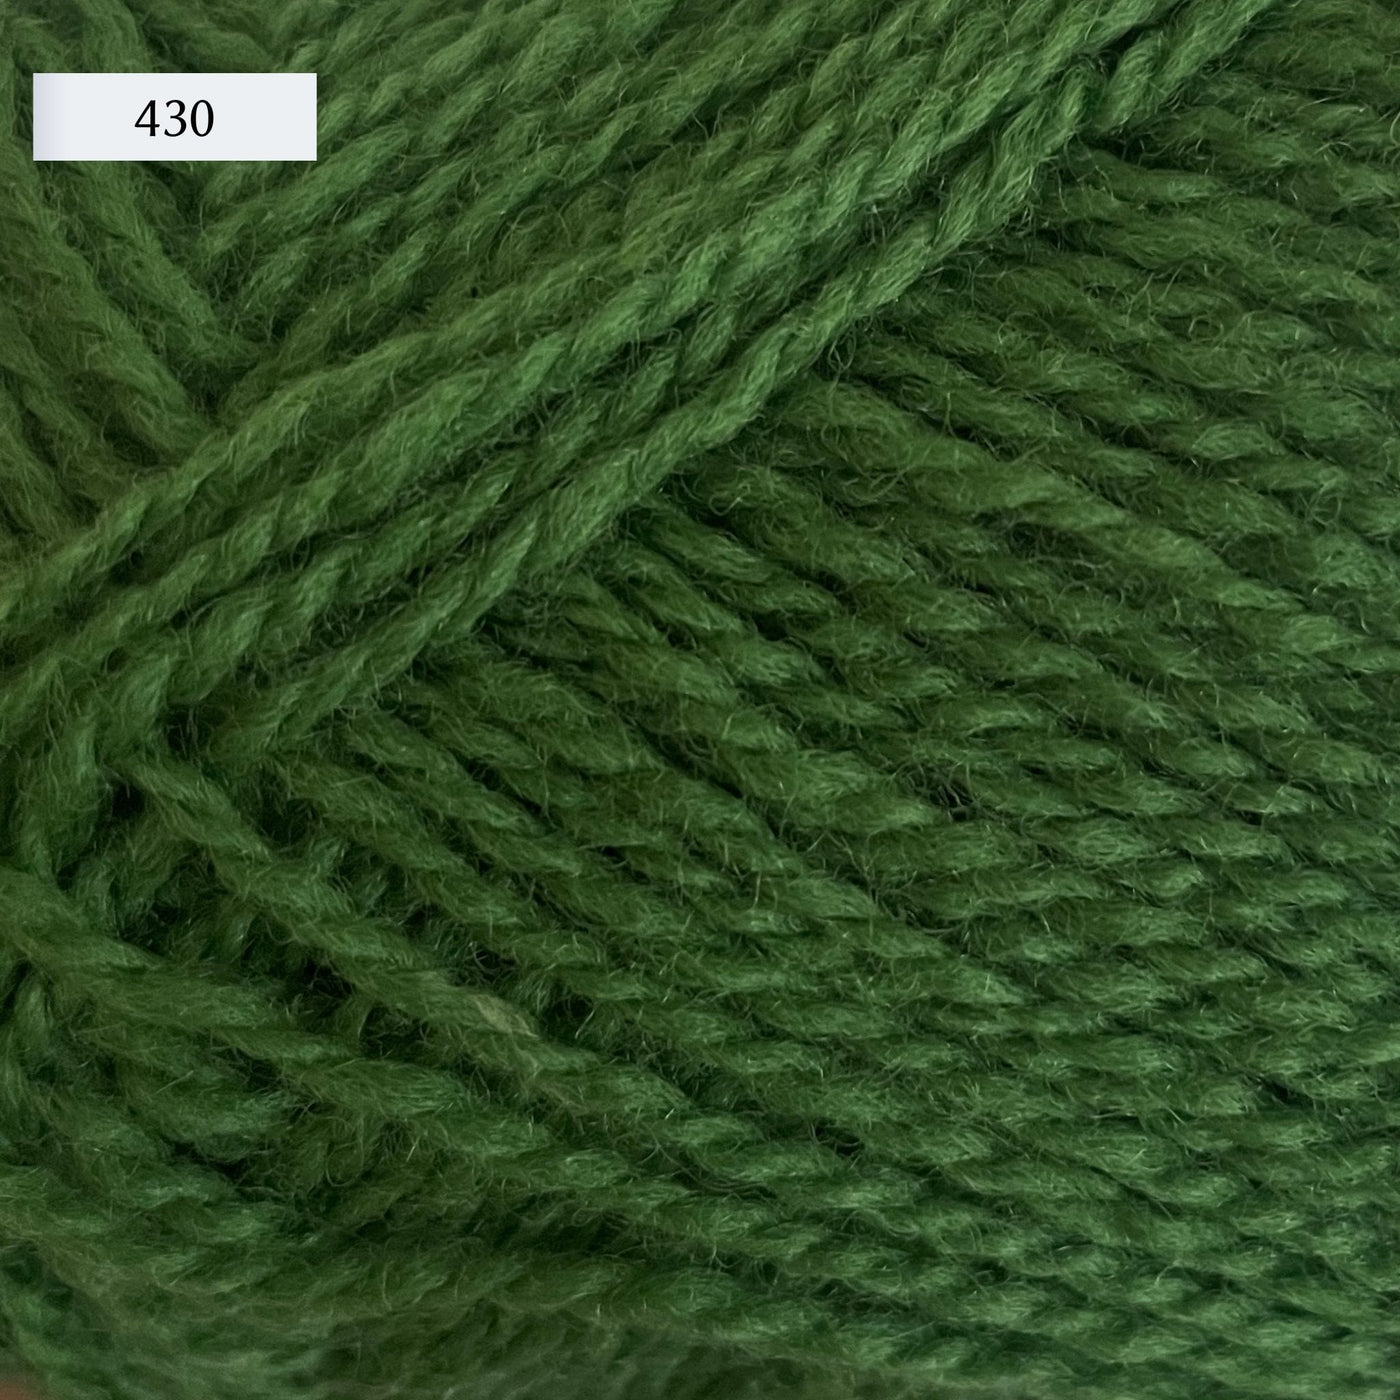 Rauma Finullgarn, a fingering/sport weight yarn, in color 430, a medium green